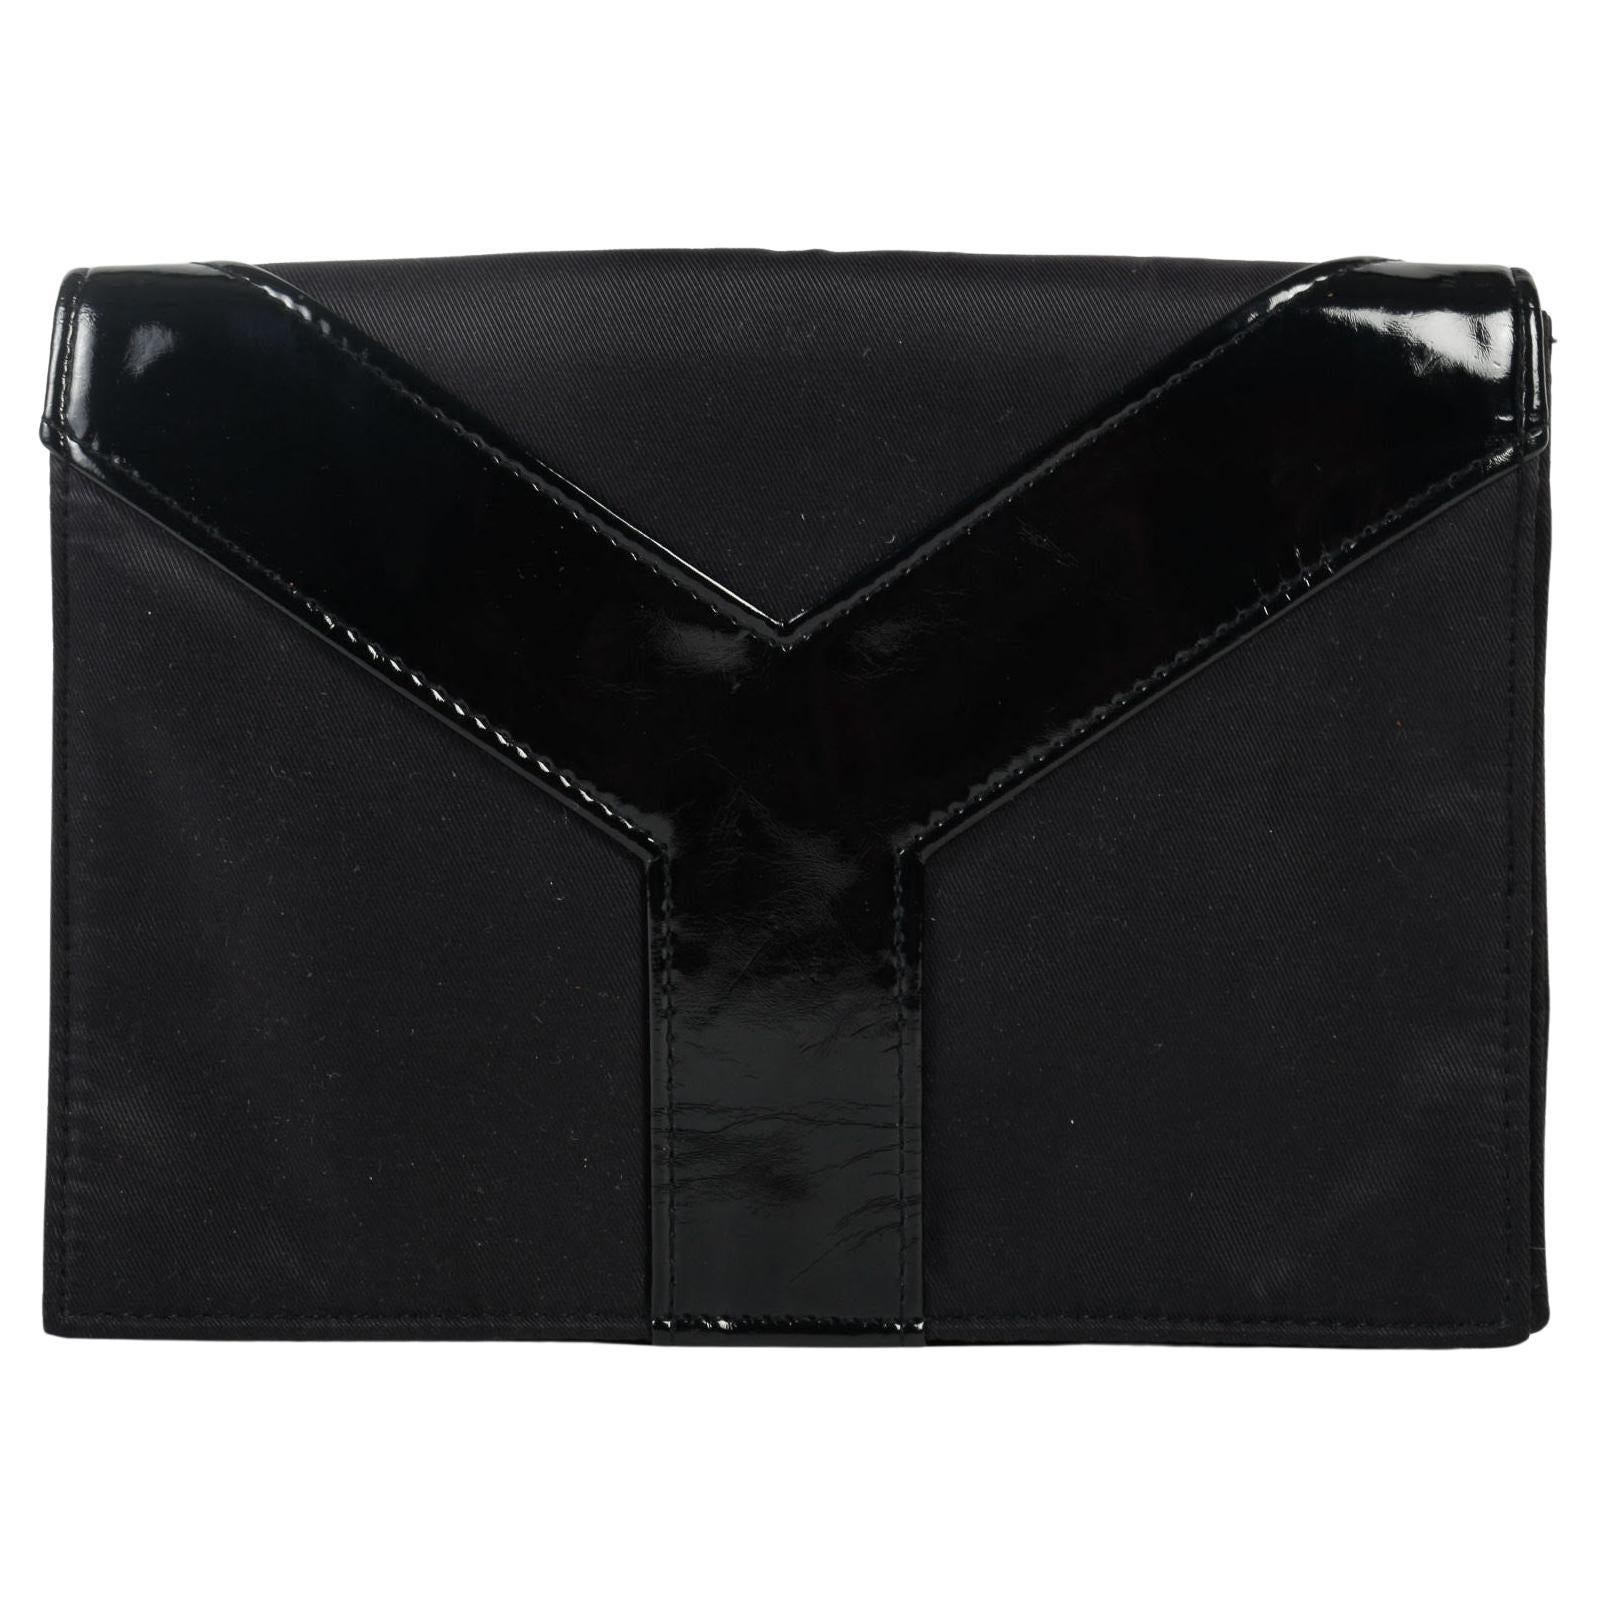 Vintage-Clutch von Yves Saint-Laurent, schwarzes Leder, 20. Jahrhundert.